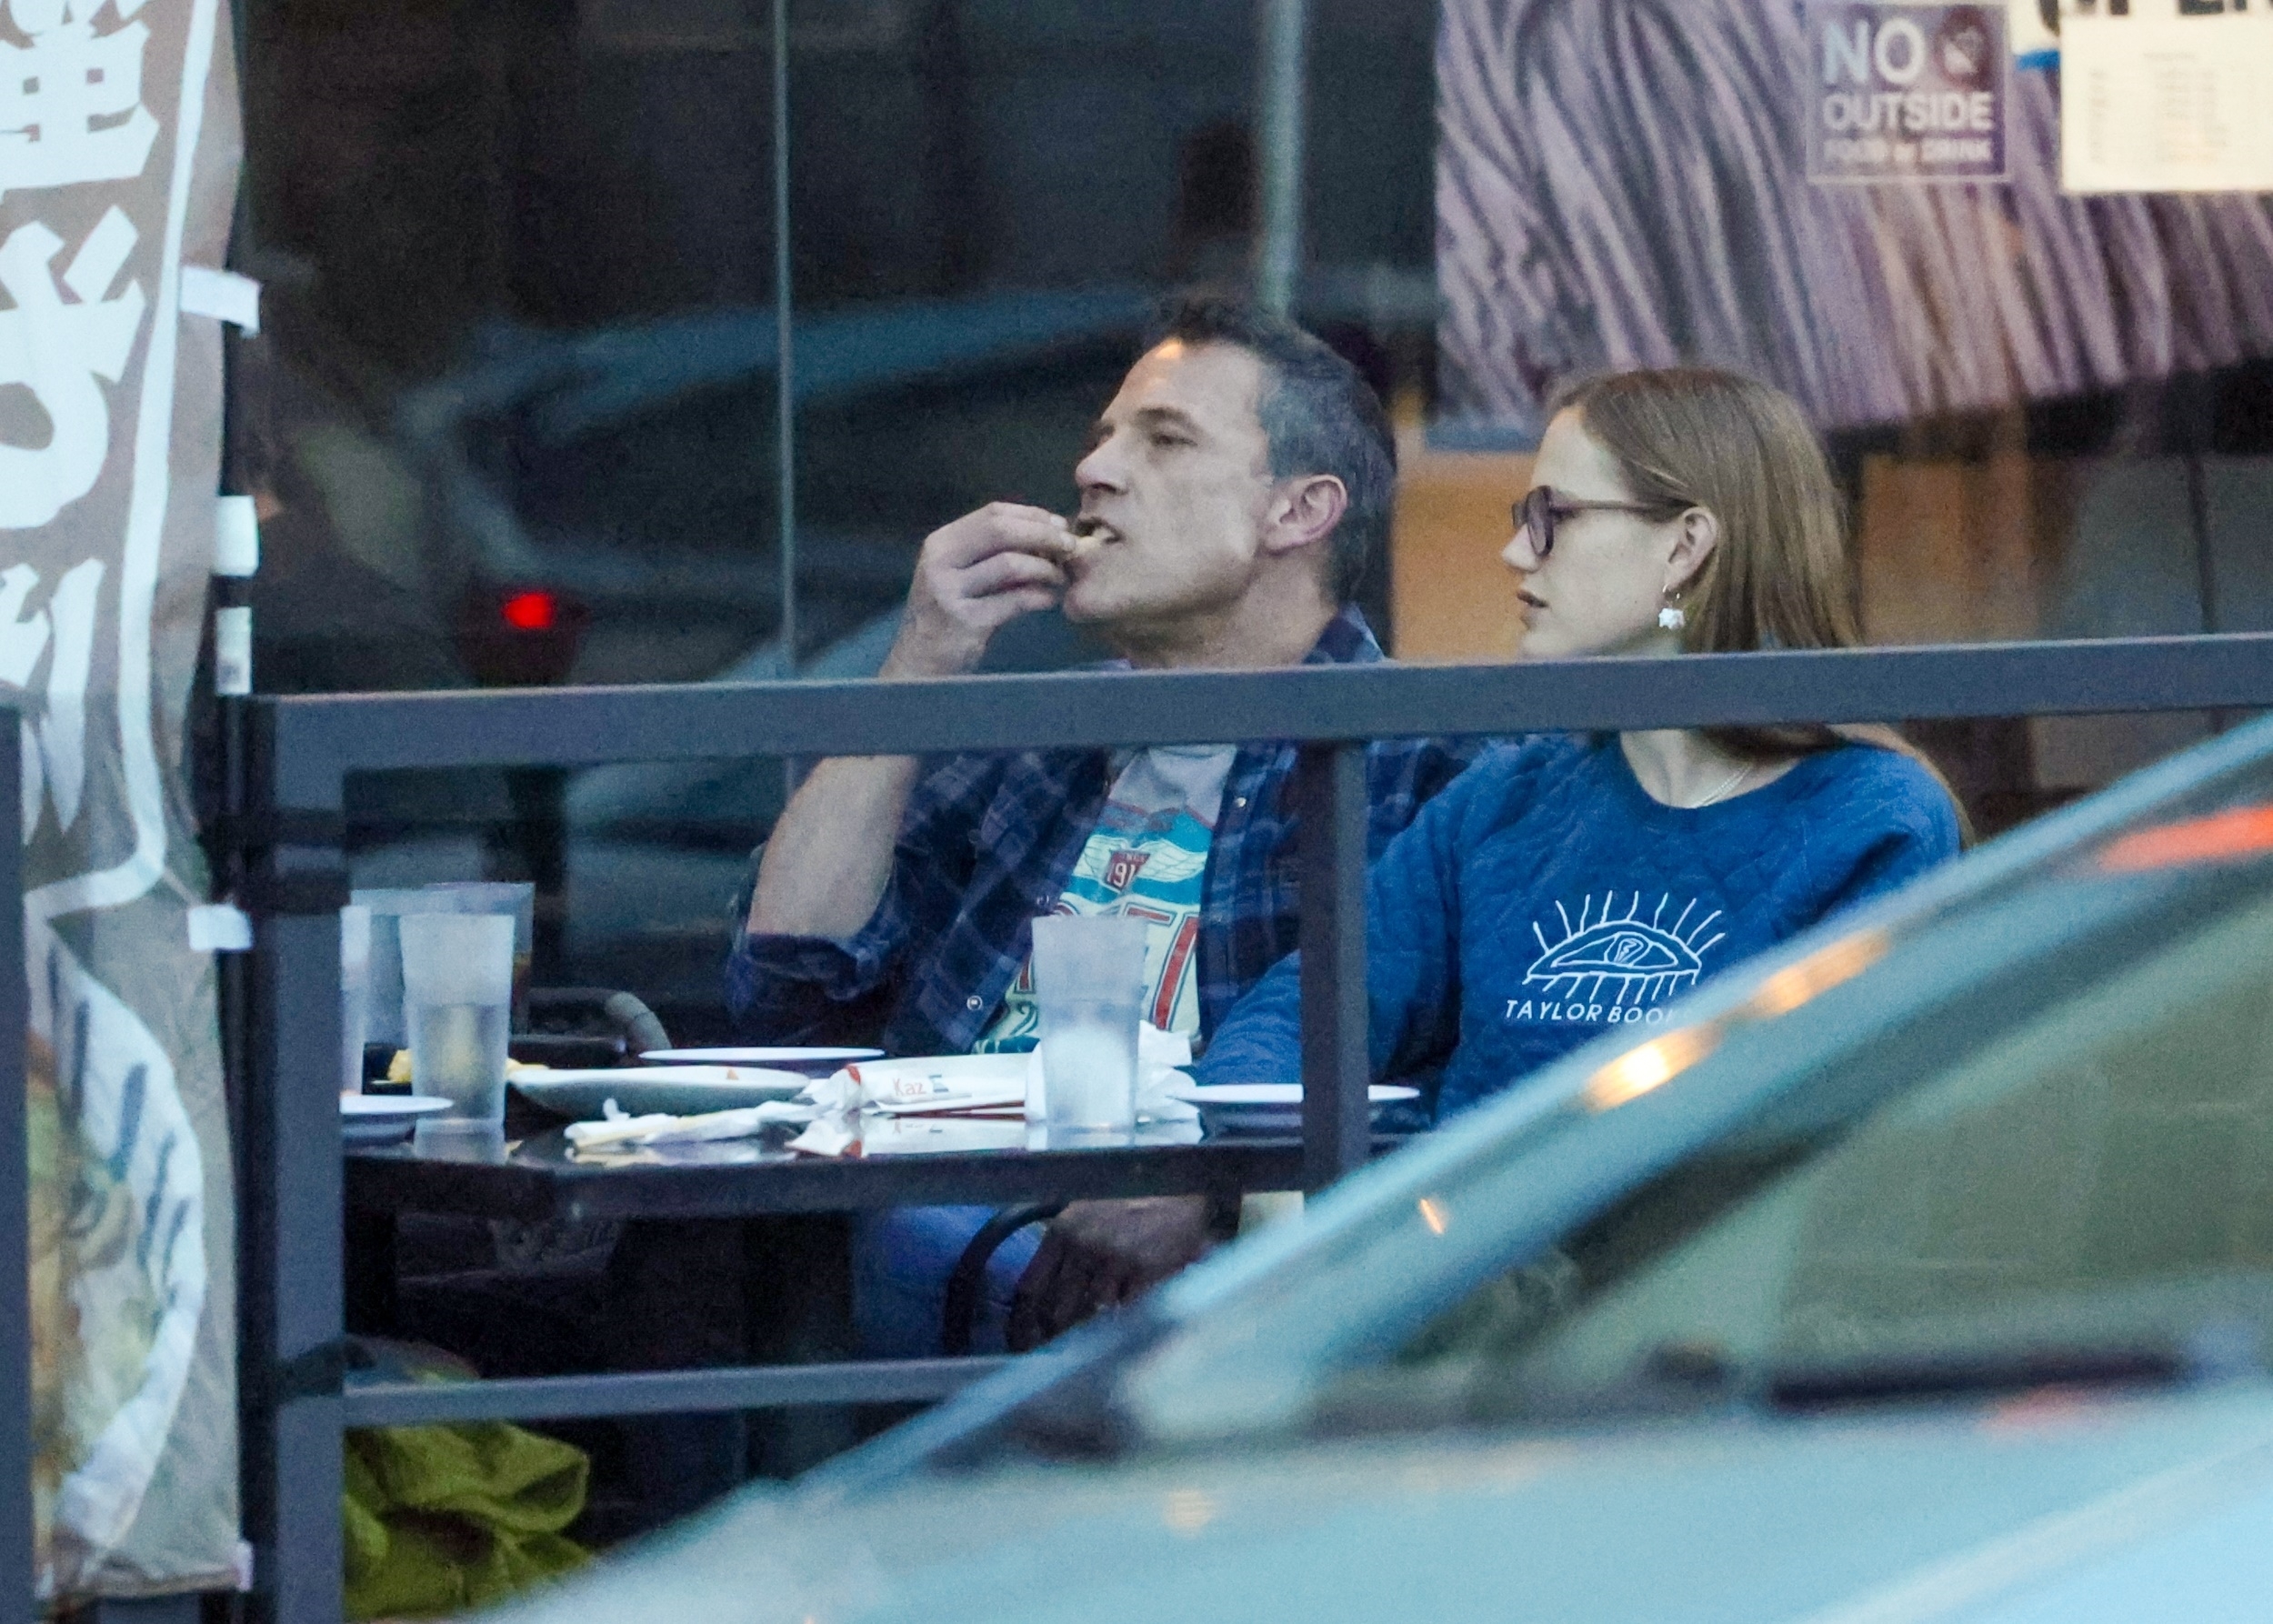 Ben Affleck and Violet Affleck eating